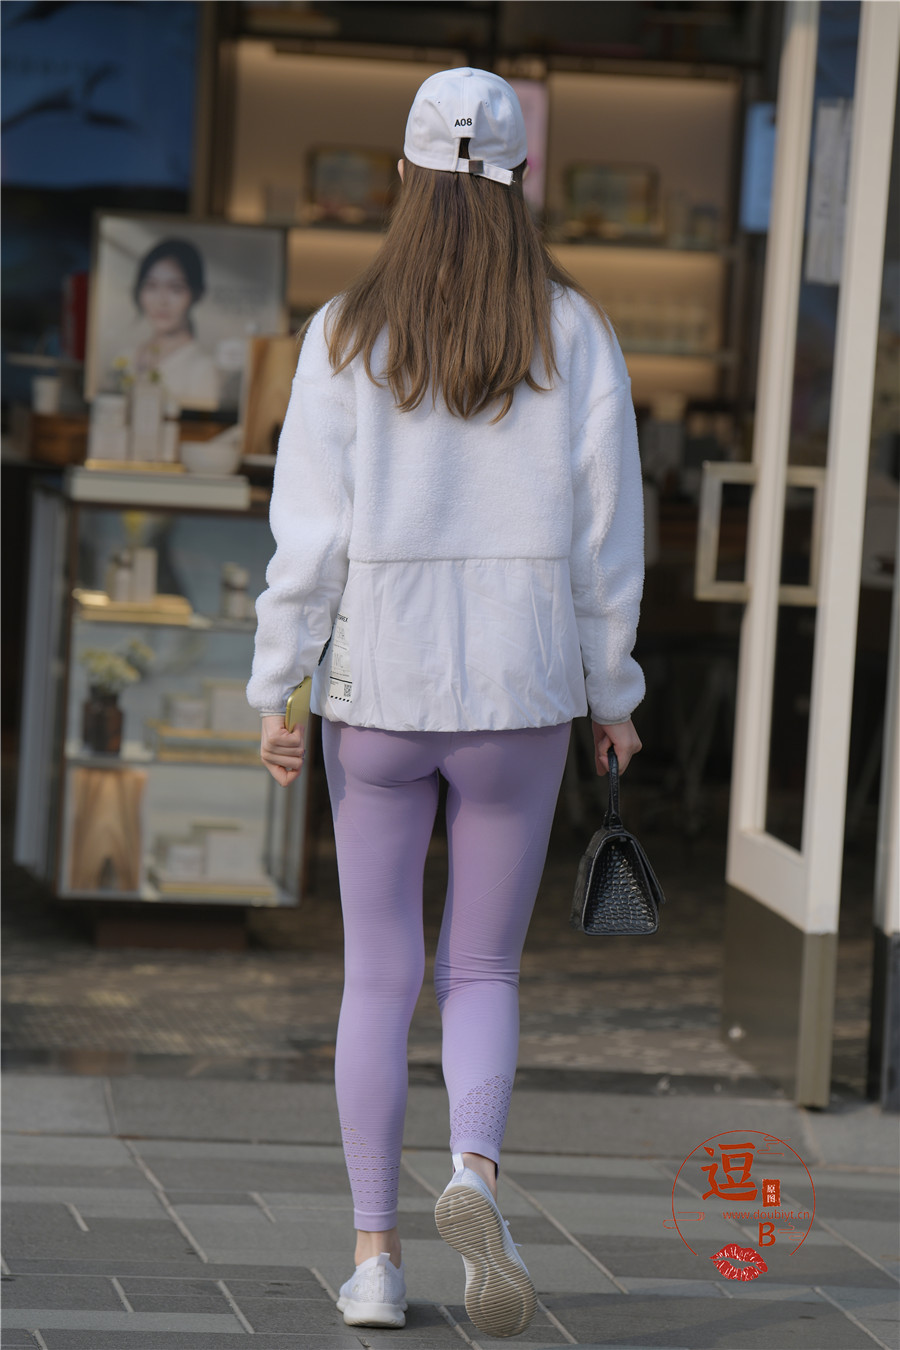 编码3176紫色紧身裤美腿翘臀 16361636 紧身裤,美腿,臀, 帖子ID:3048